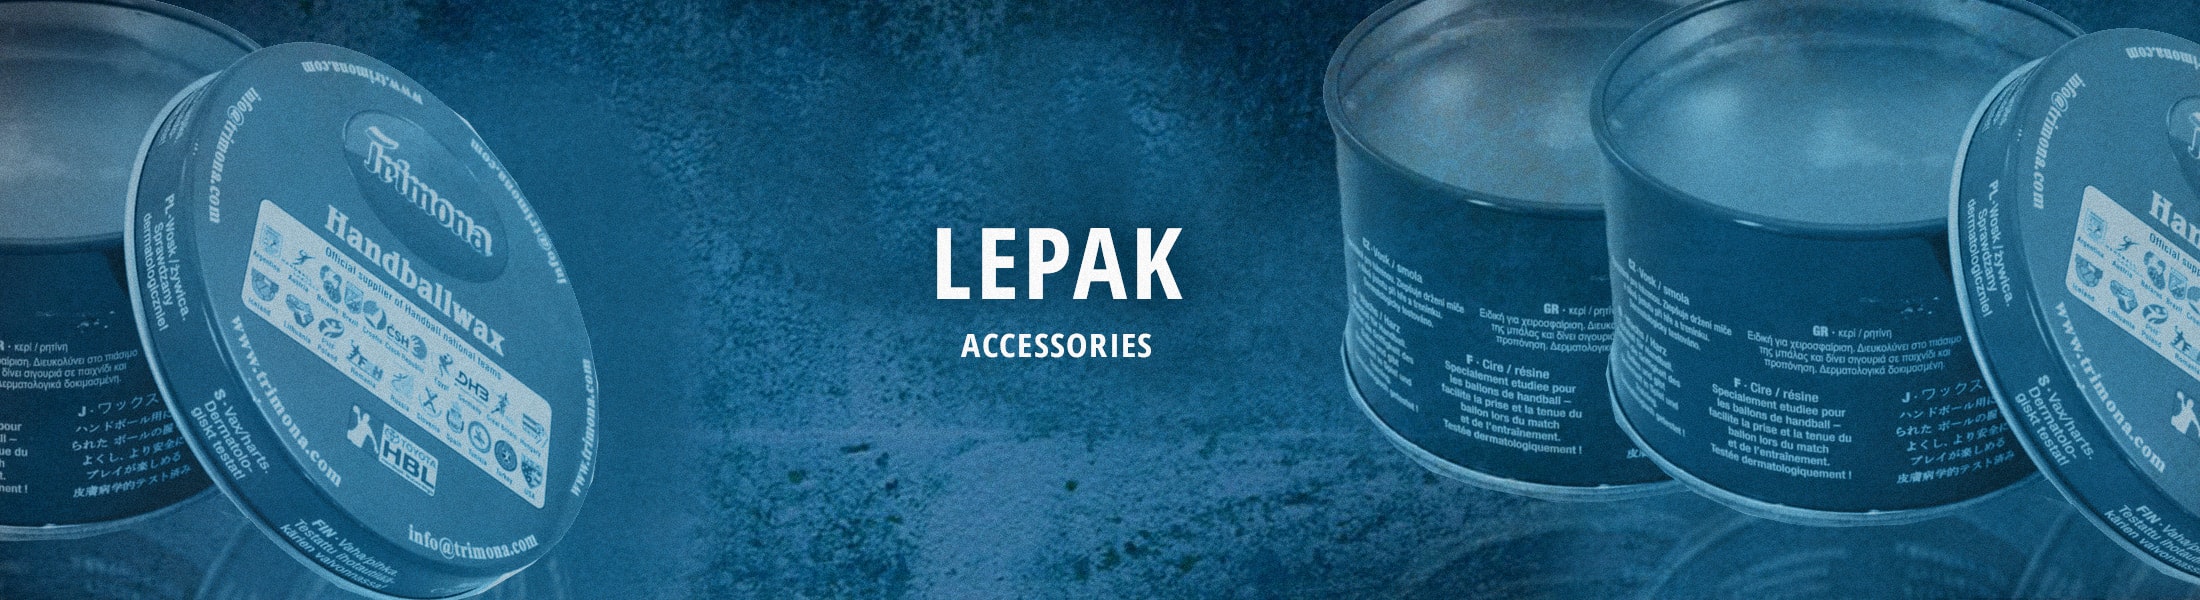 Accessories - Lepak